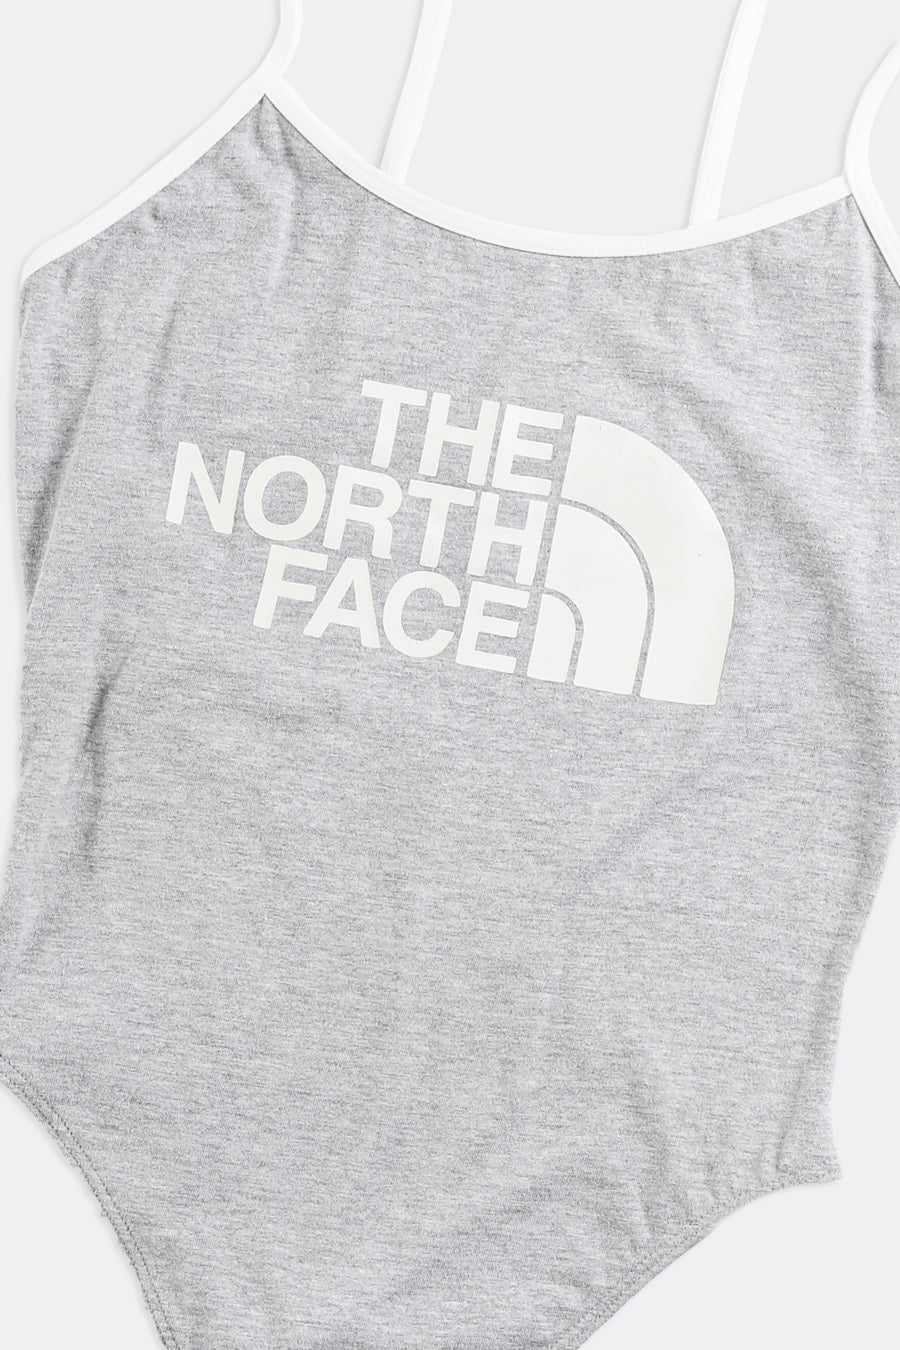 Rework North Face Bodysuit - M